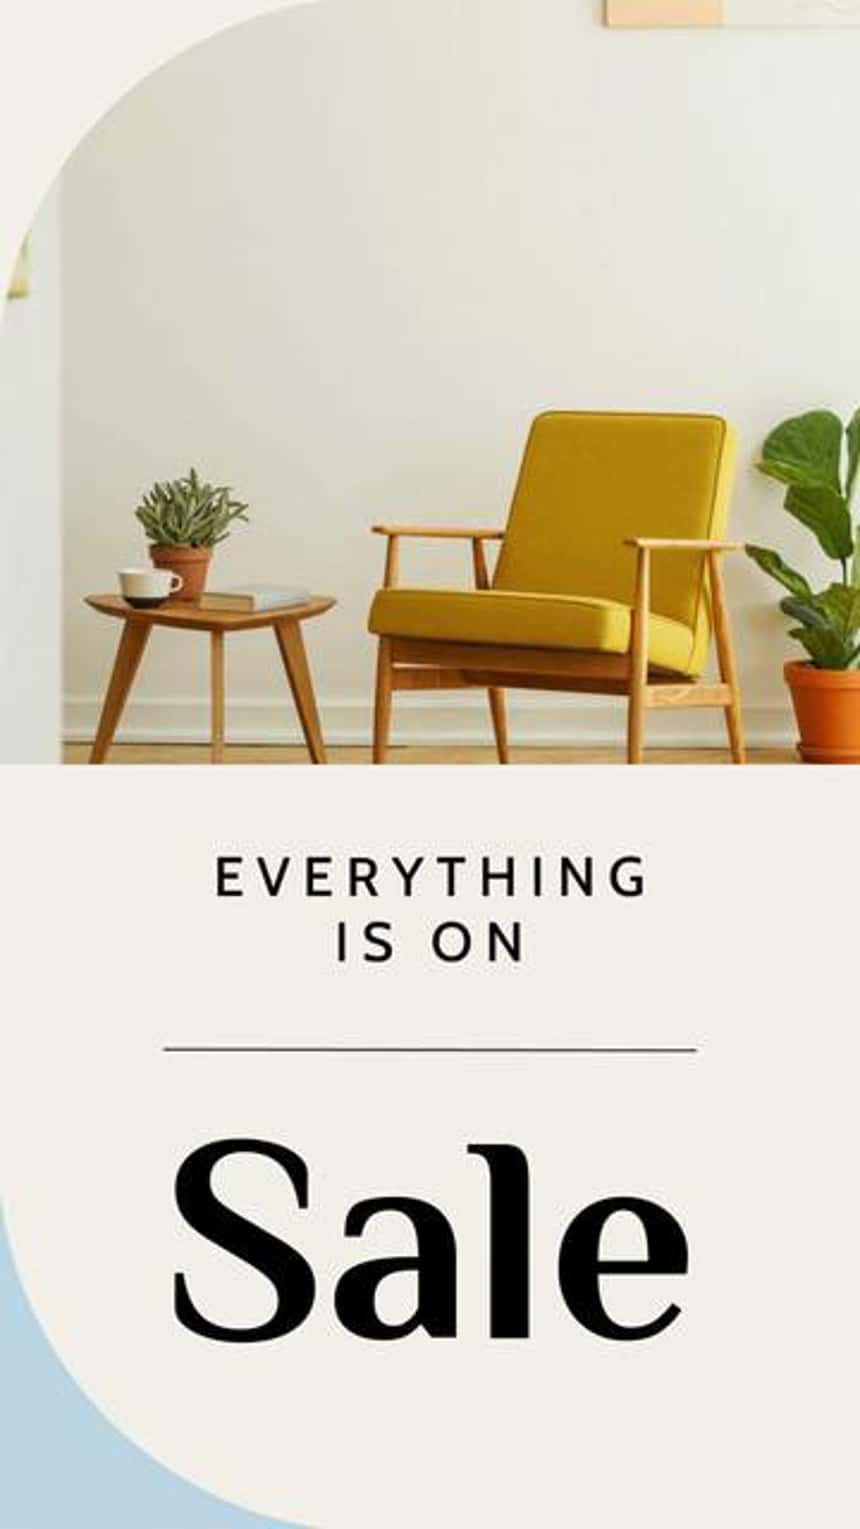 黄色い椅子、植物、サイドテーブルの画像を表示した、家具ビジネス向けのInstagram動画広告テンプレート。画像のテキストには「すべてセール商品」と書かれています。